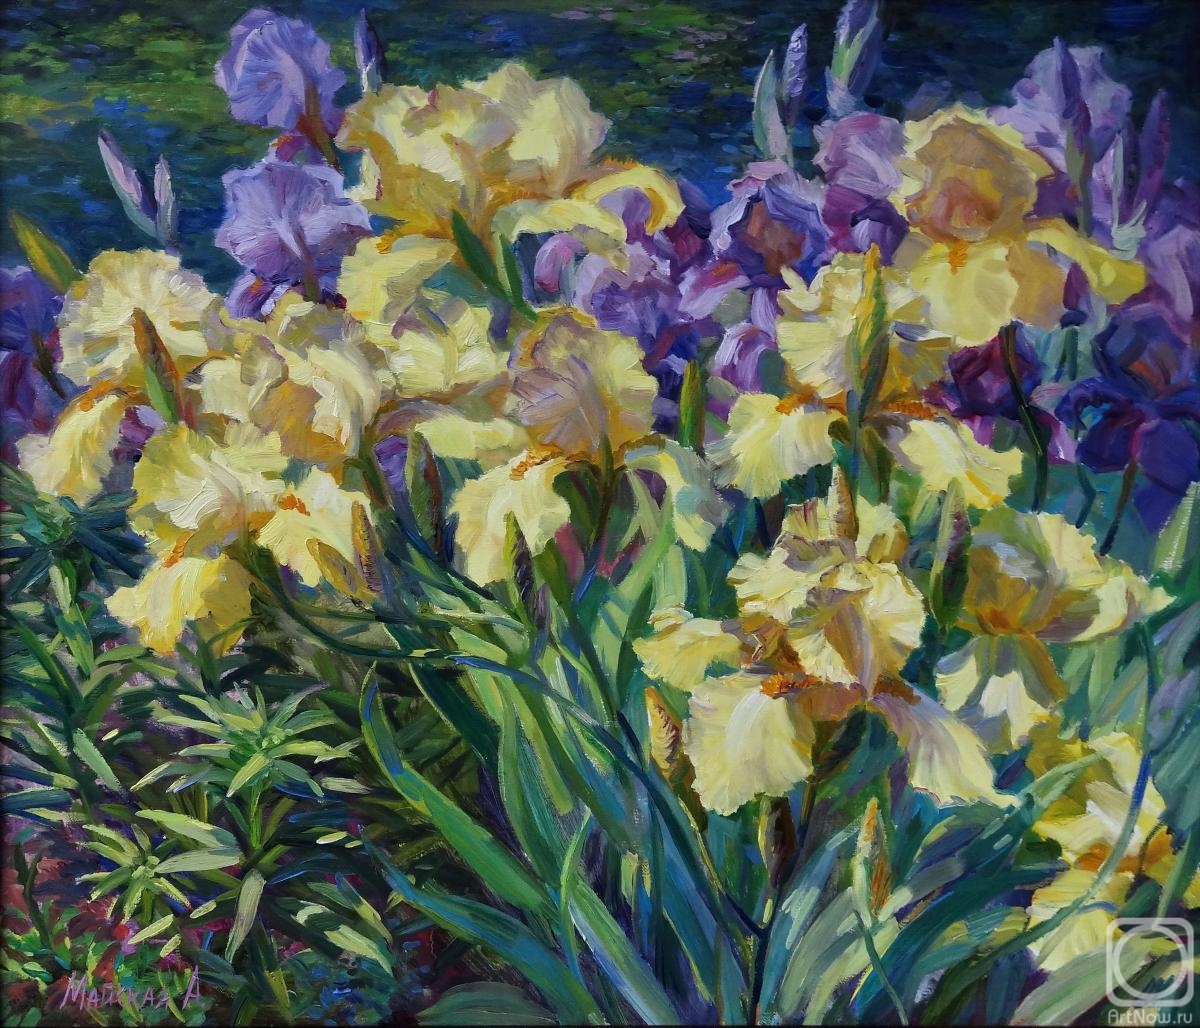 Maiskaya Alla. Irises